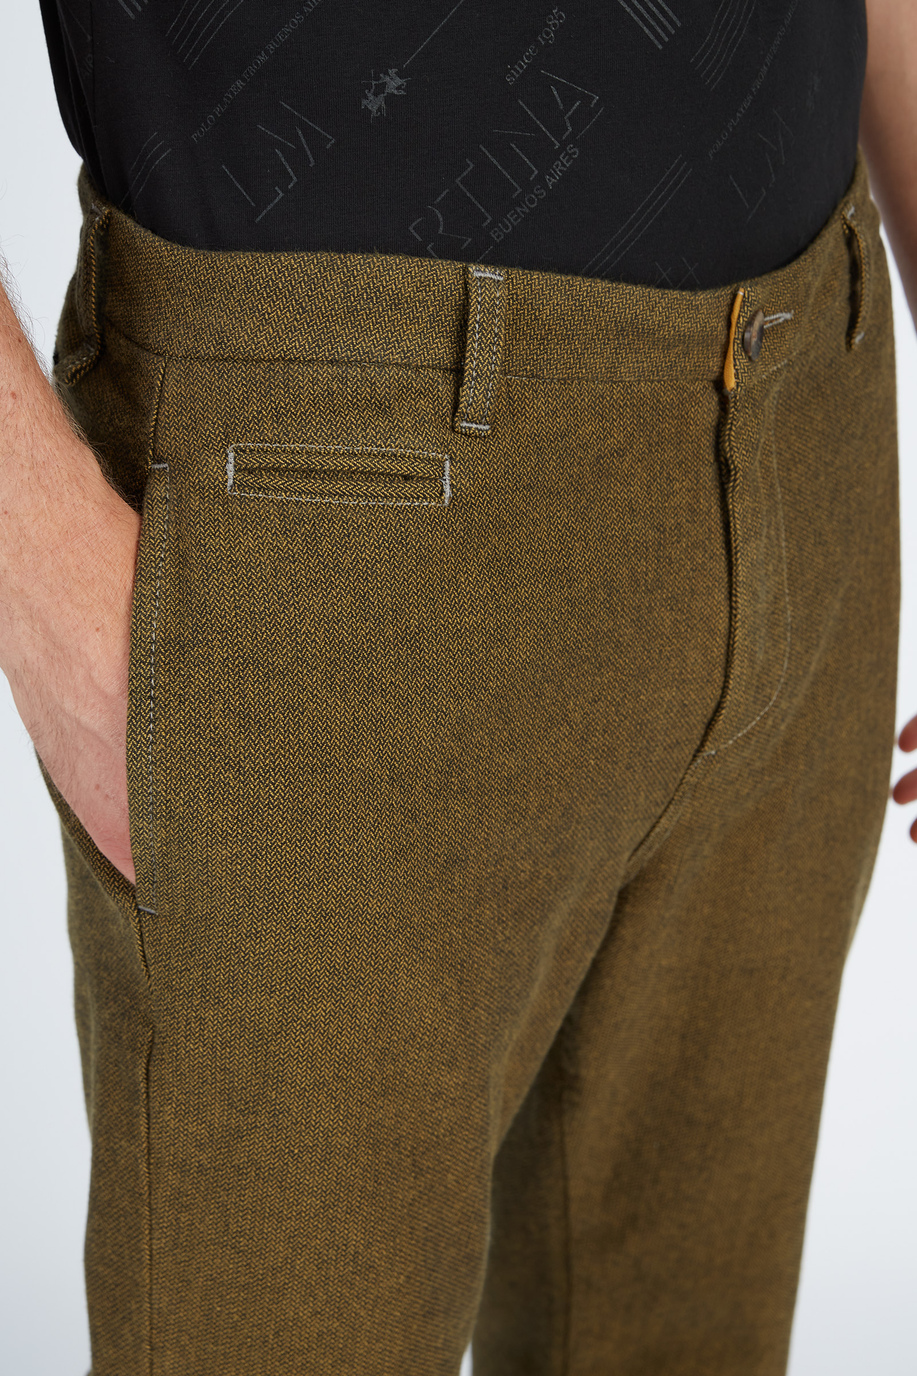 Men’s trousers 5 pockets regular fit cotton